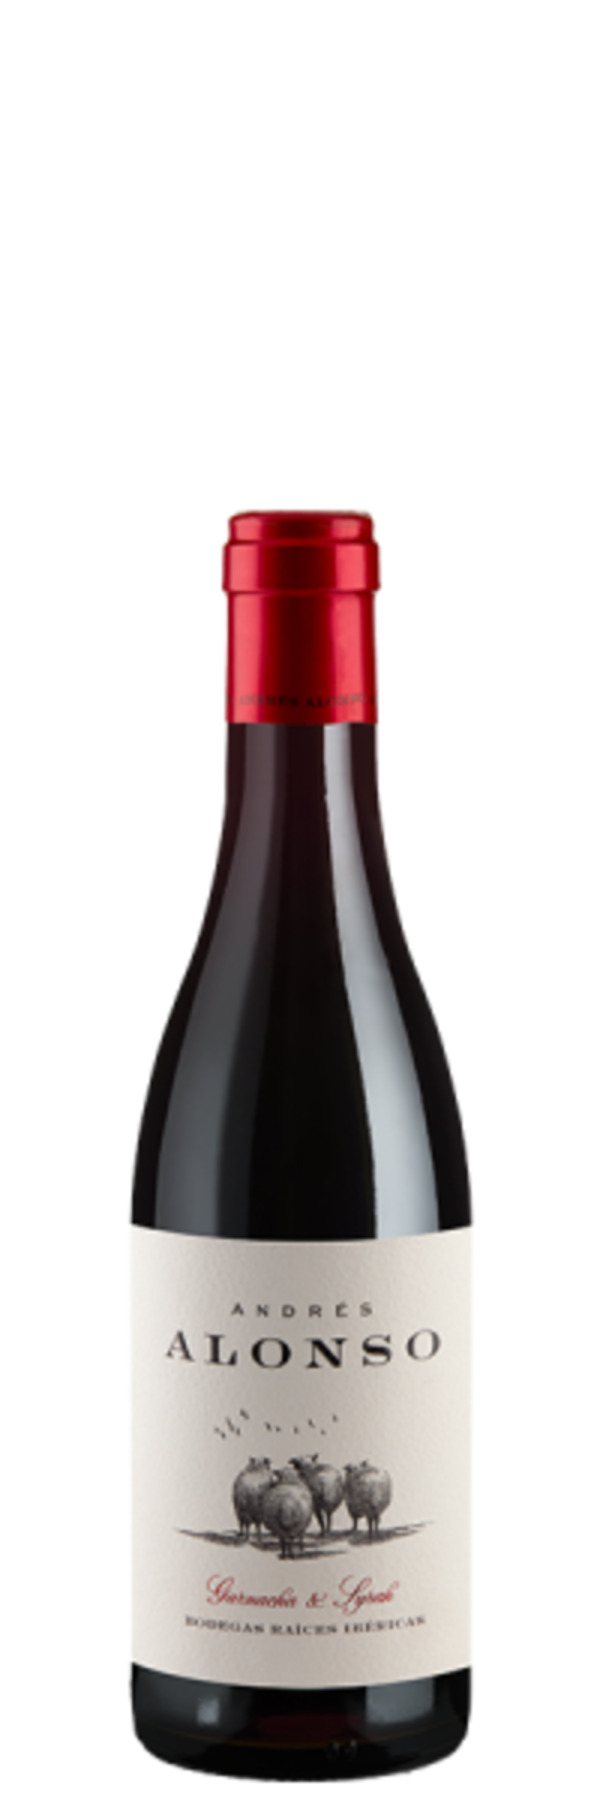 Bild 1 von Andrés Alonso Garnacha Syrah - 0,375L - 2021 - Bodegas Raices Ibericas - Spanischer Rotwein